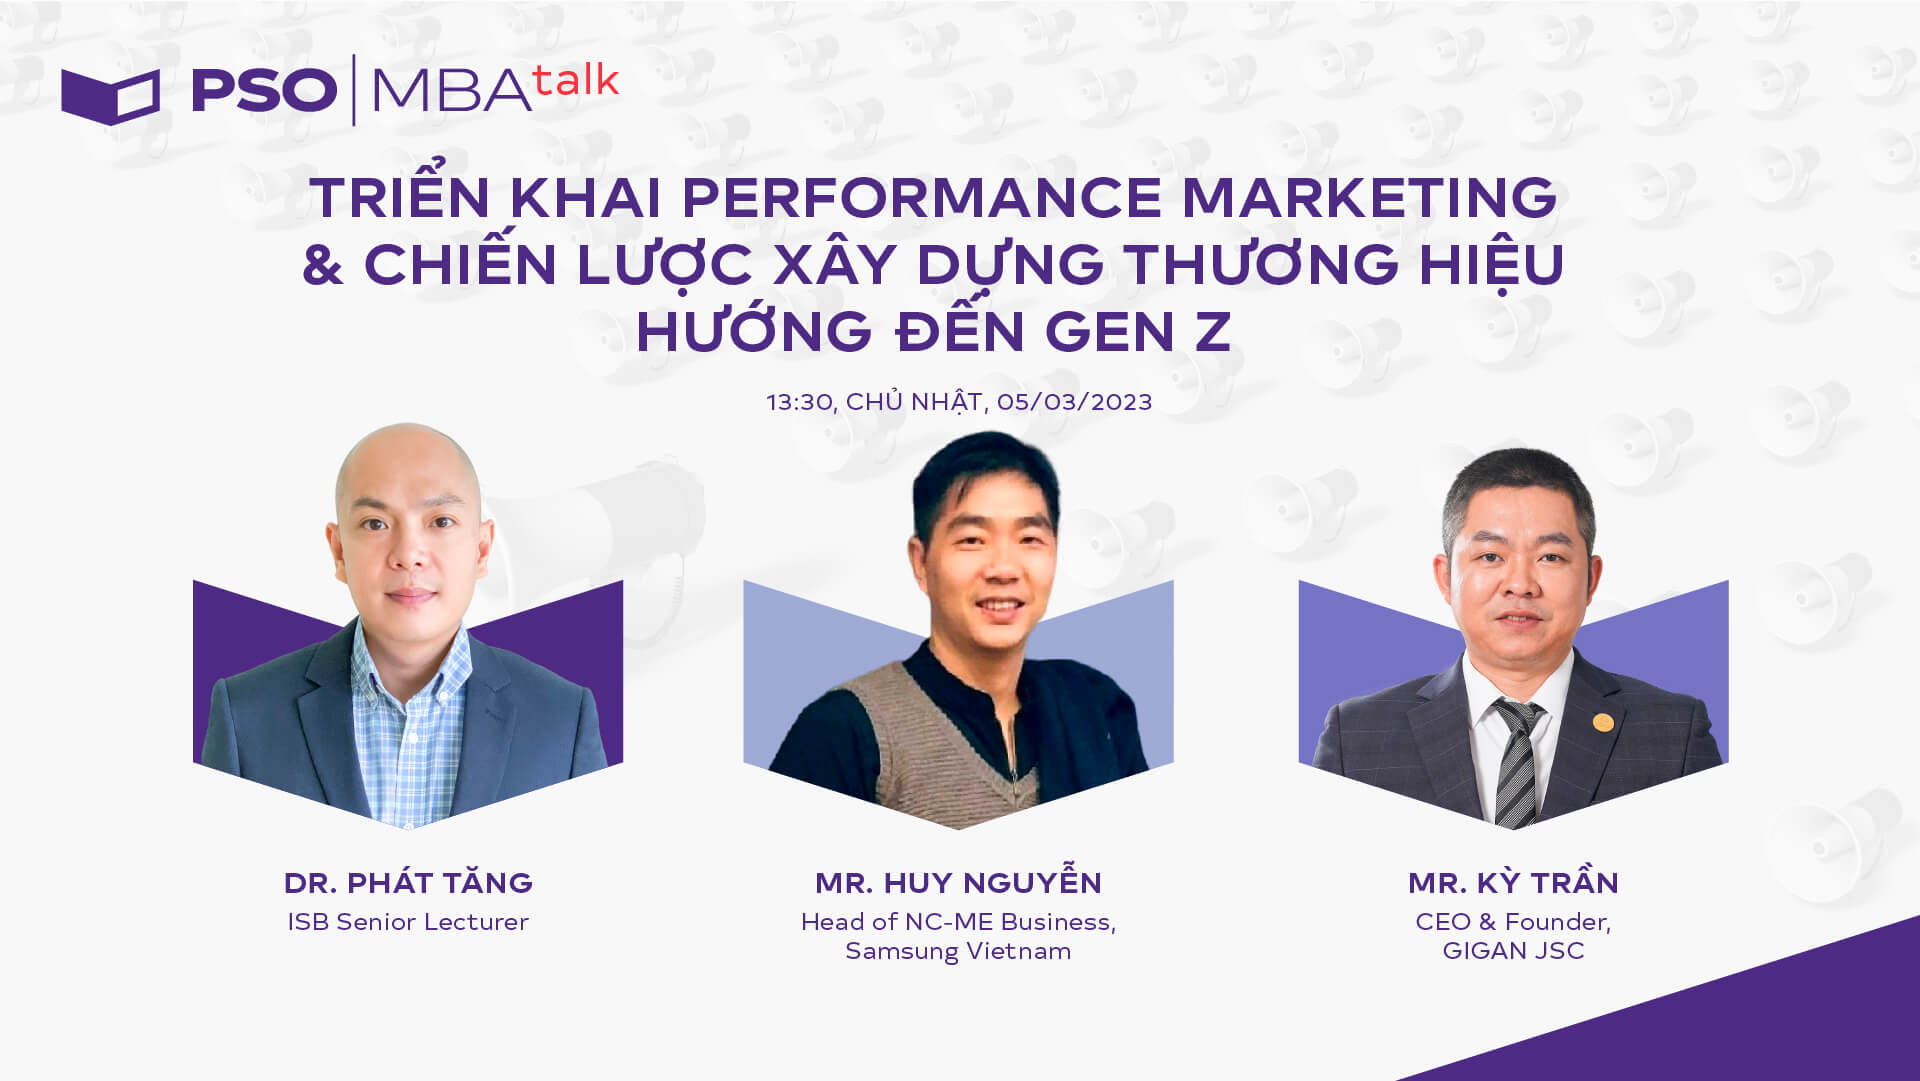 MBA Talk #44: Triển khai performance marketing & chiến lược xây dựng thương hiệu hướng đến Gen Z